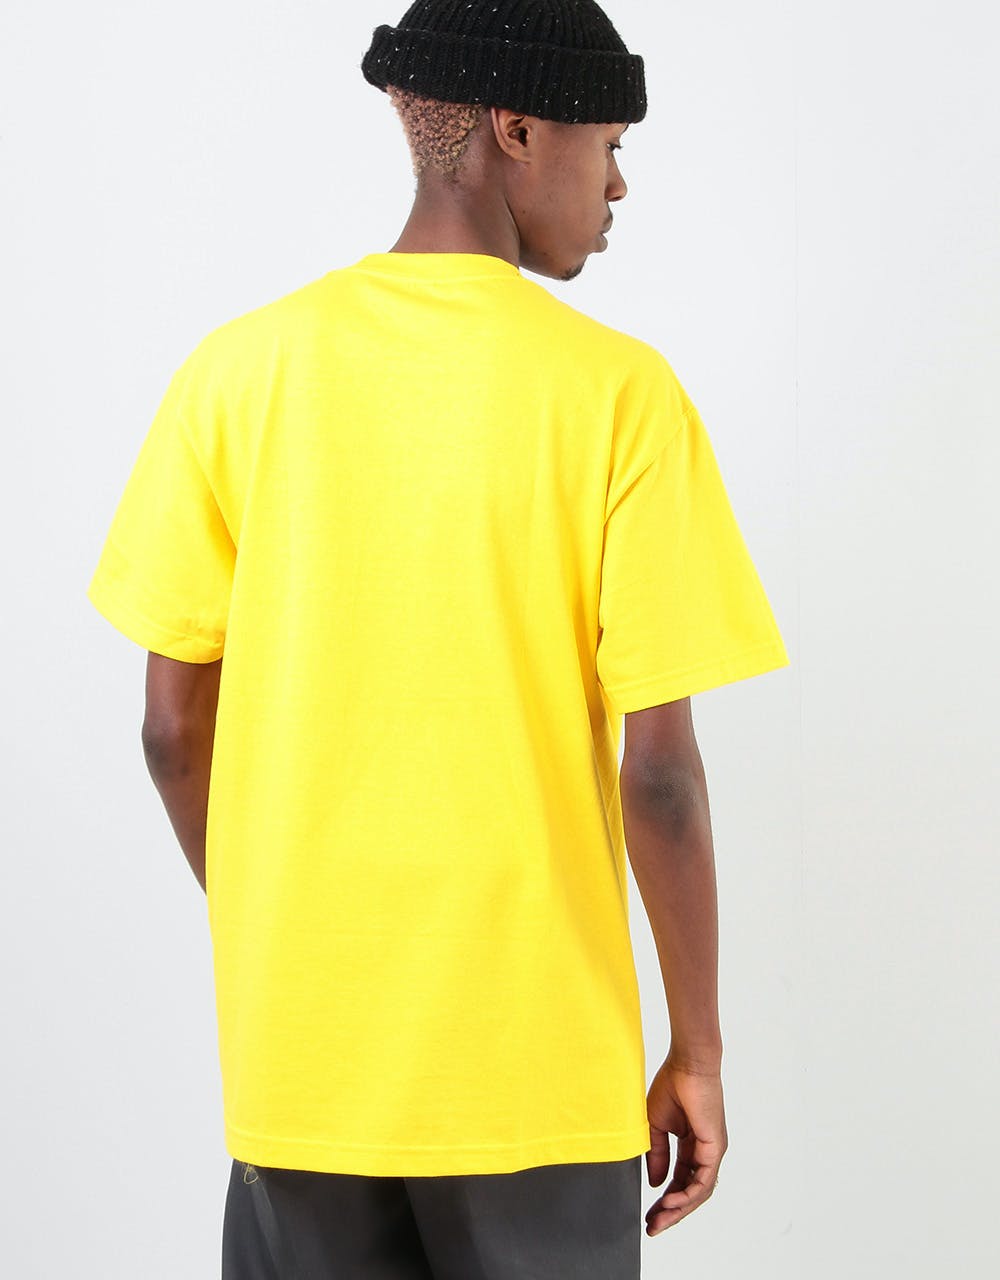 Butter Goods Jungle Groove T-Shirt - Yellow